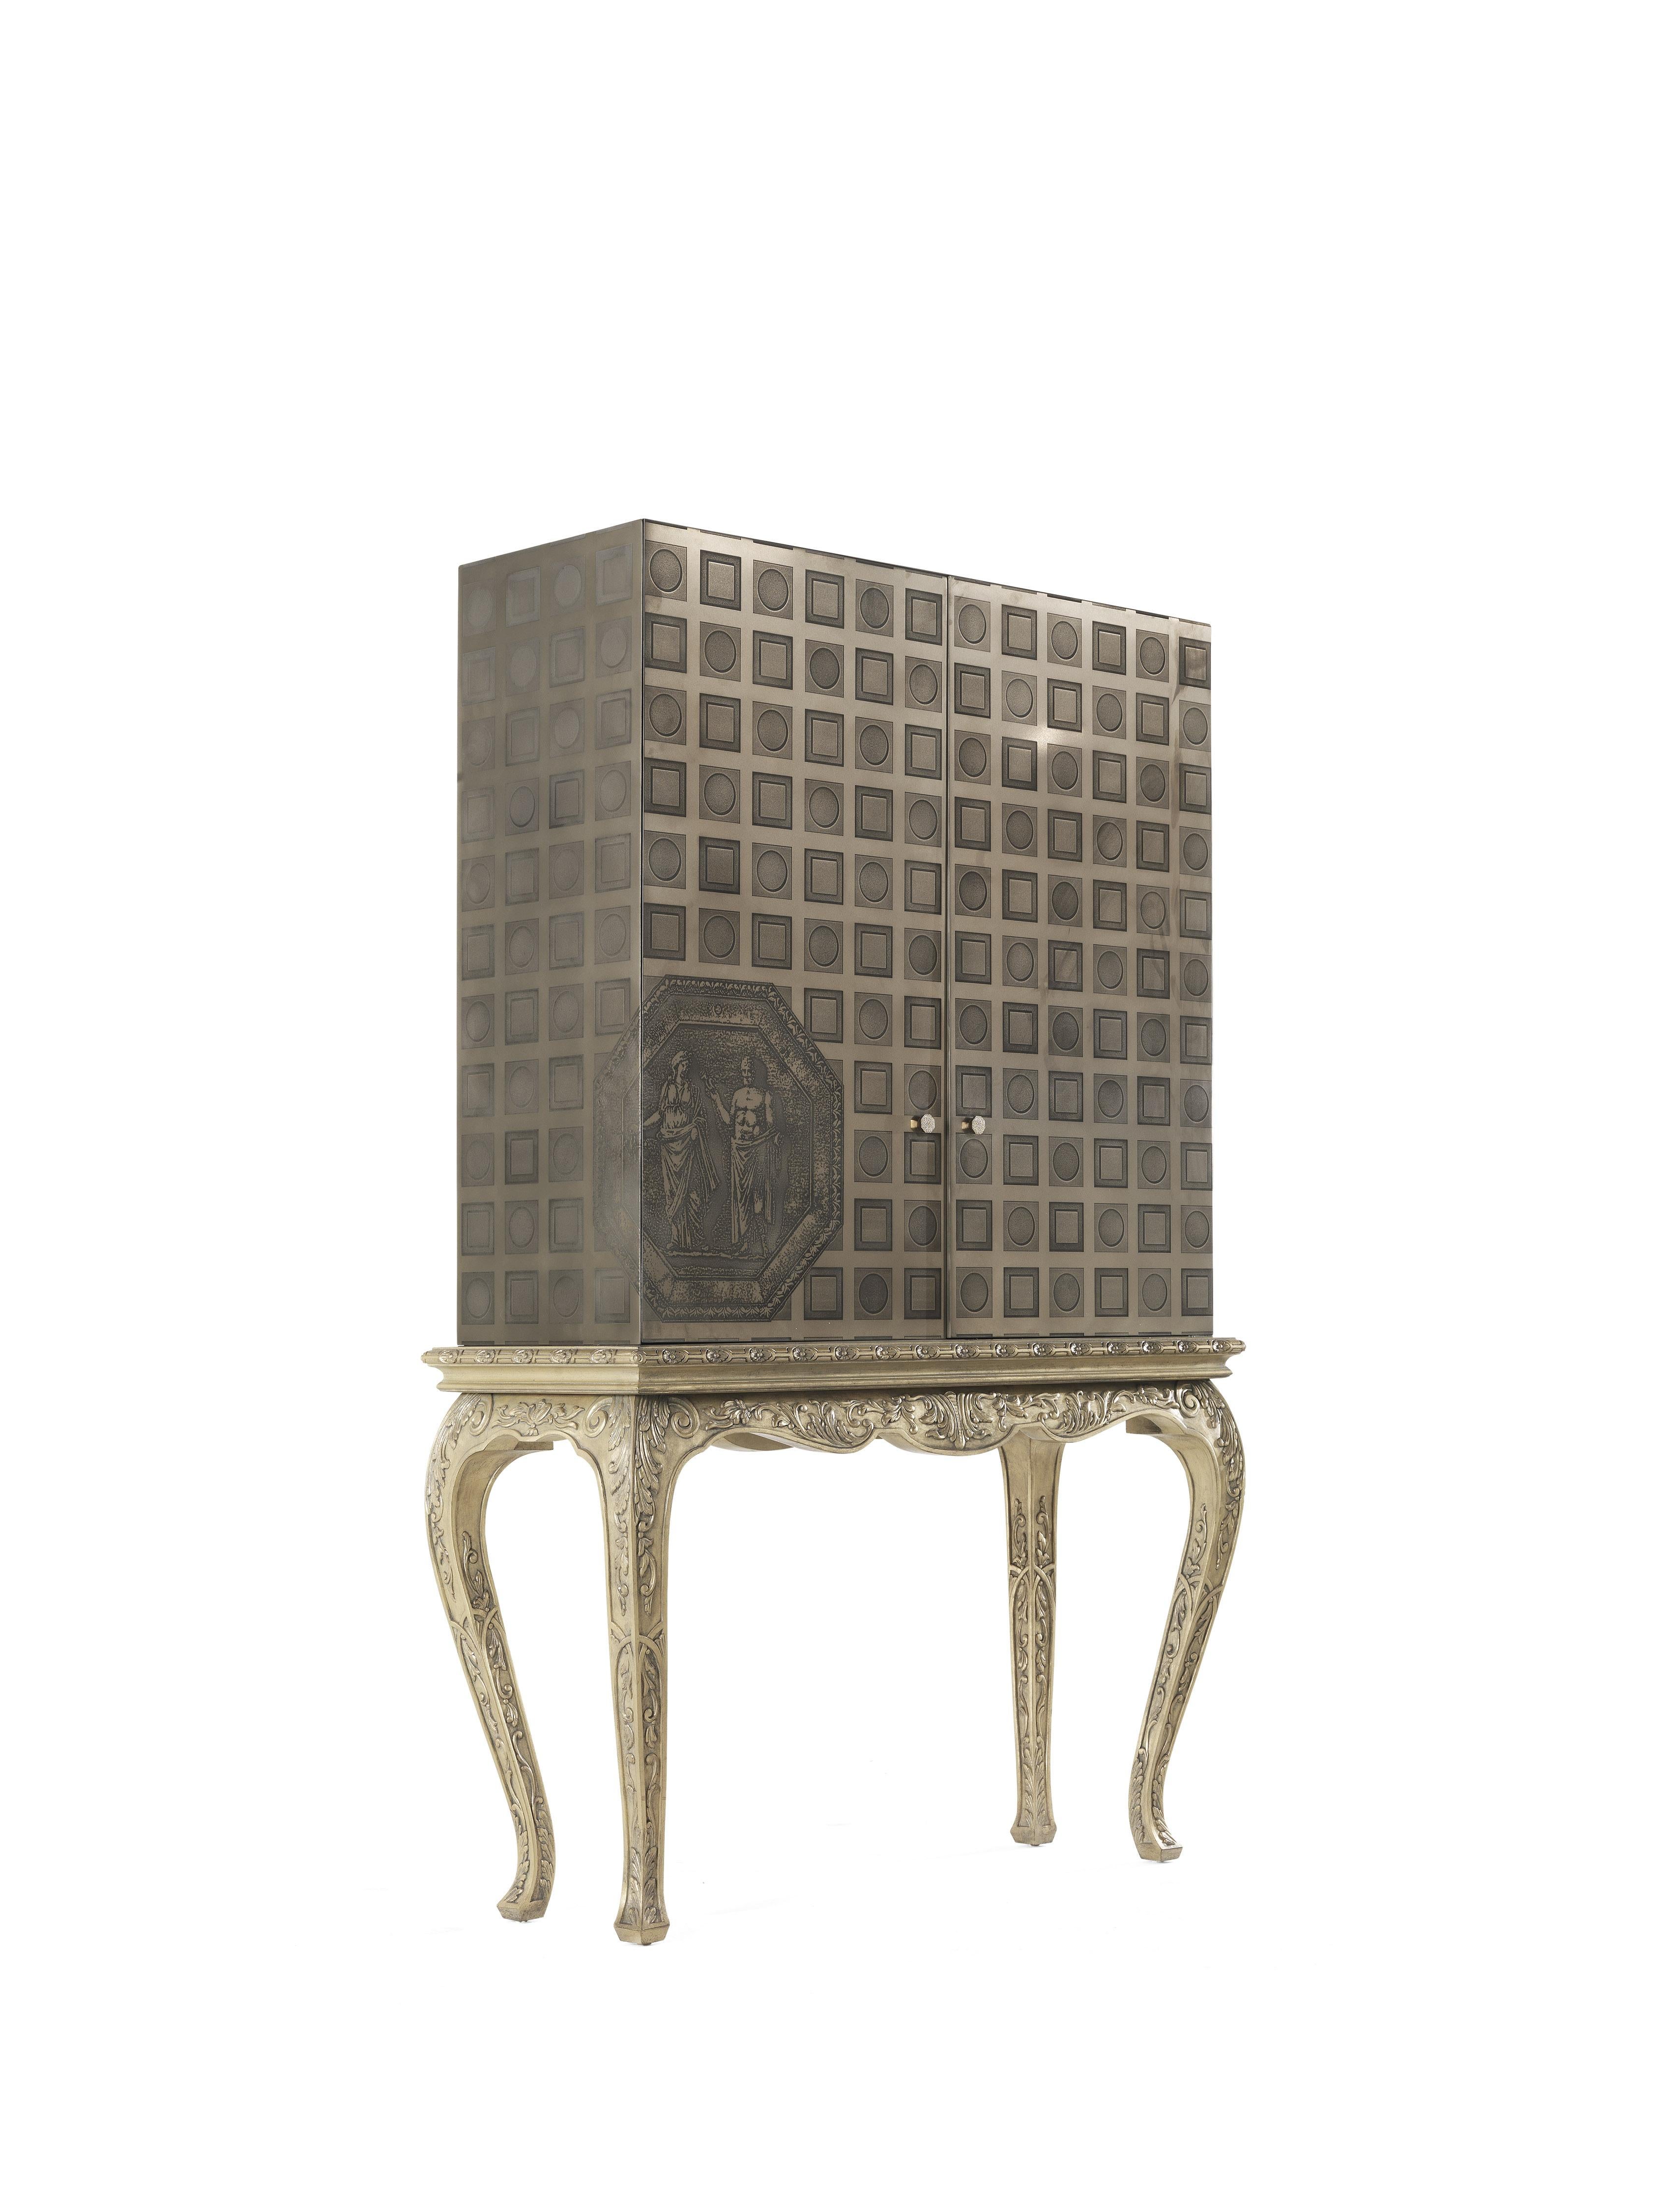 La ligne Fragonard exprime l'approche du design de Collection/One, où se rencontrent l'héritage artisanal, le décoratif et l'expérimentation dans l'utilisation des matériaux, des techniques et des processus. Dans le cabinet Fragonard, la base est